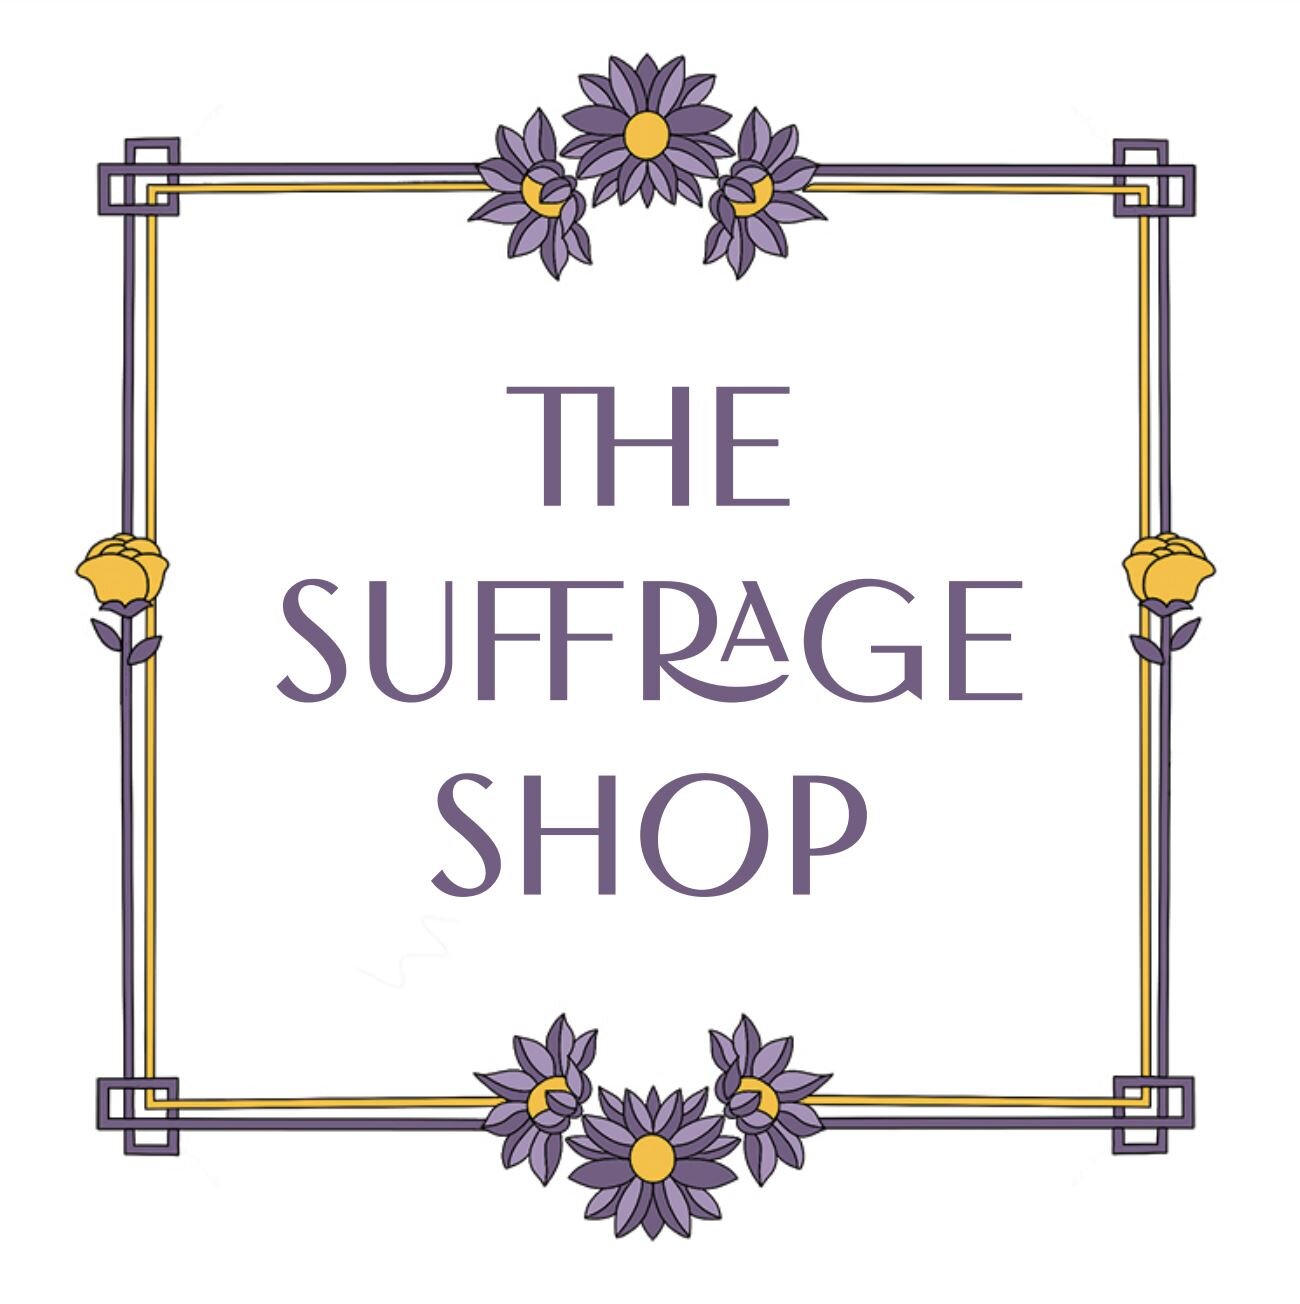 suffrage shop.JPG